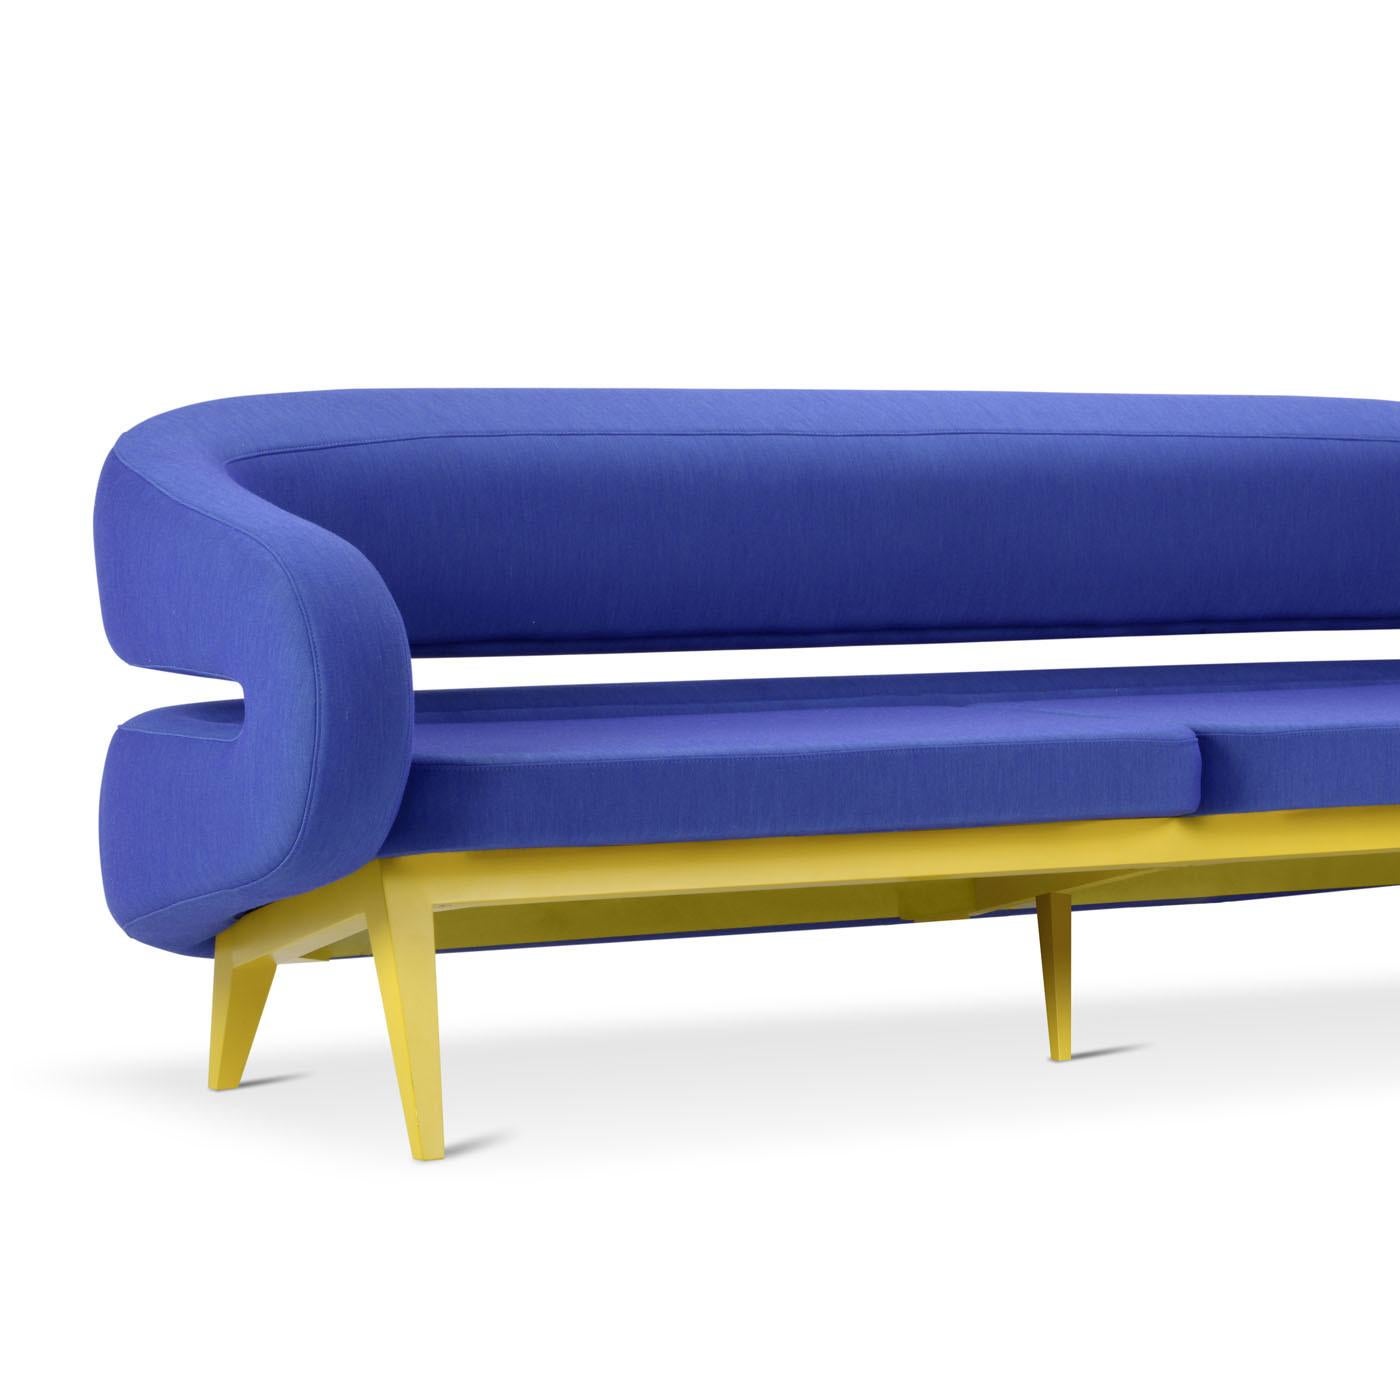 Avec son design futuriste, ce canapé est doté d'une base en bois de hêtre et disponible en plusieurs finitions. Le canapé s'adapte à tous les besoins grâce à son assise indéformable rembourrée en mousse de polyuréthane de différentes densités. Ce